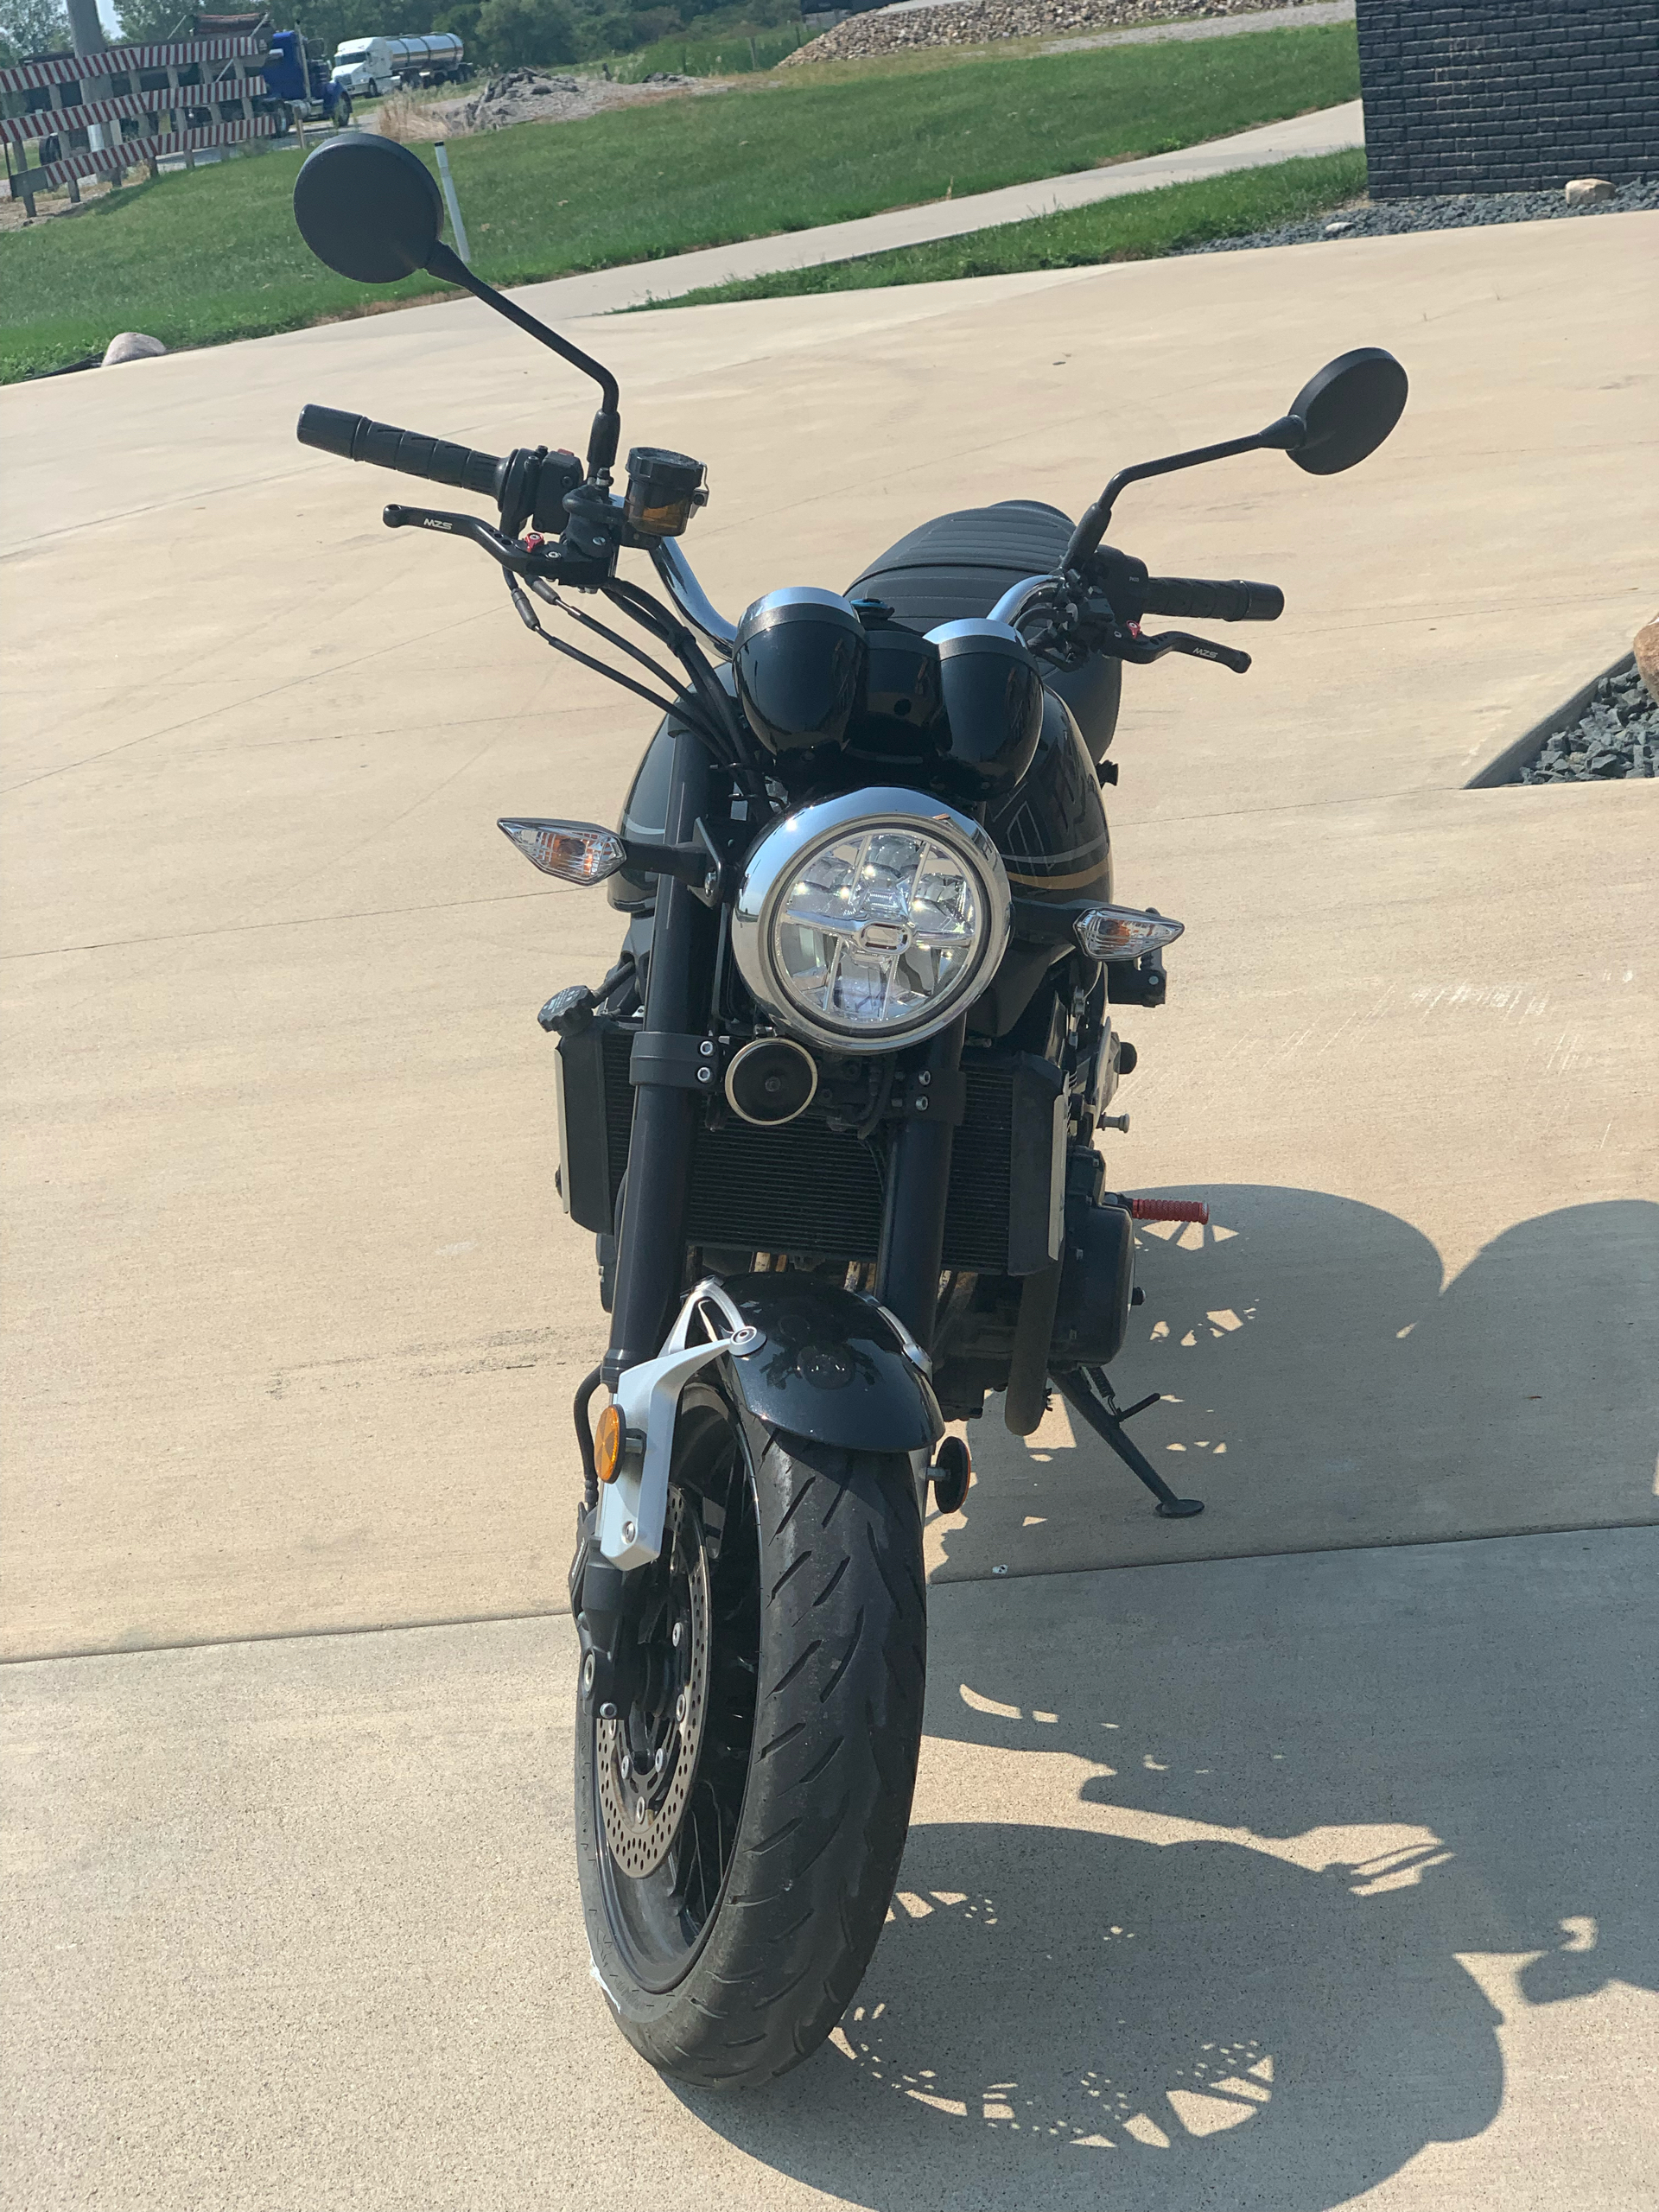 2018 Kawasaki Z900RS in Ottumwa, Iowa - Photo 3